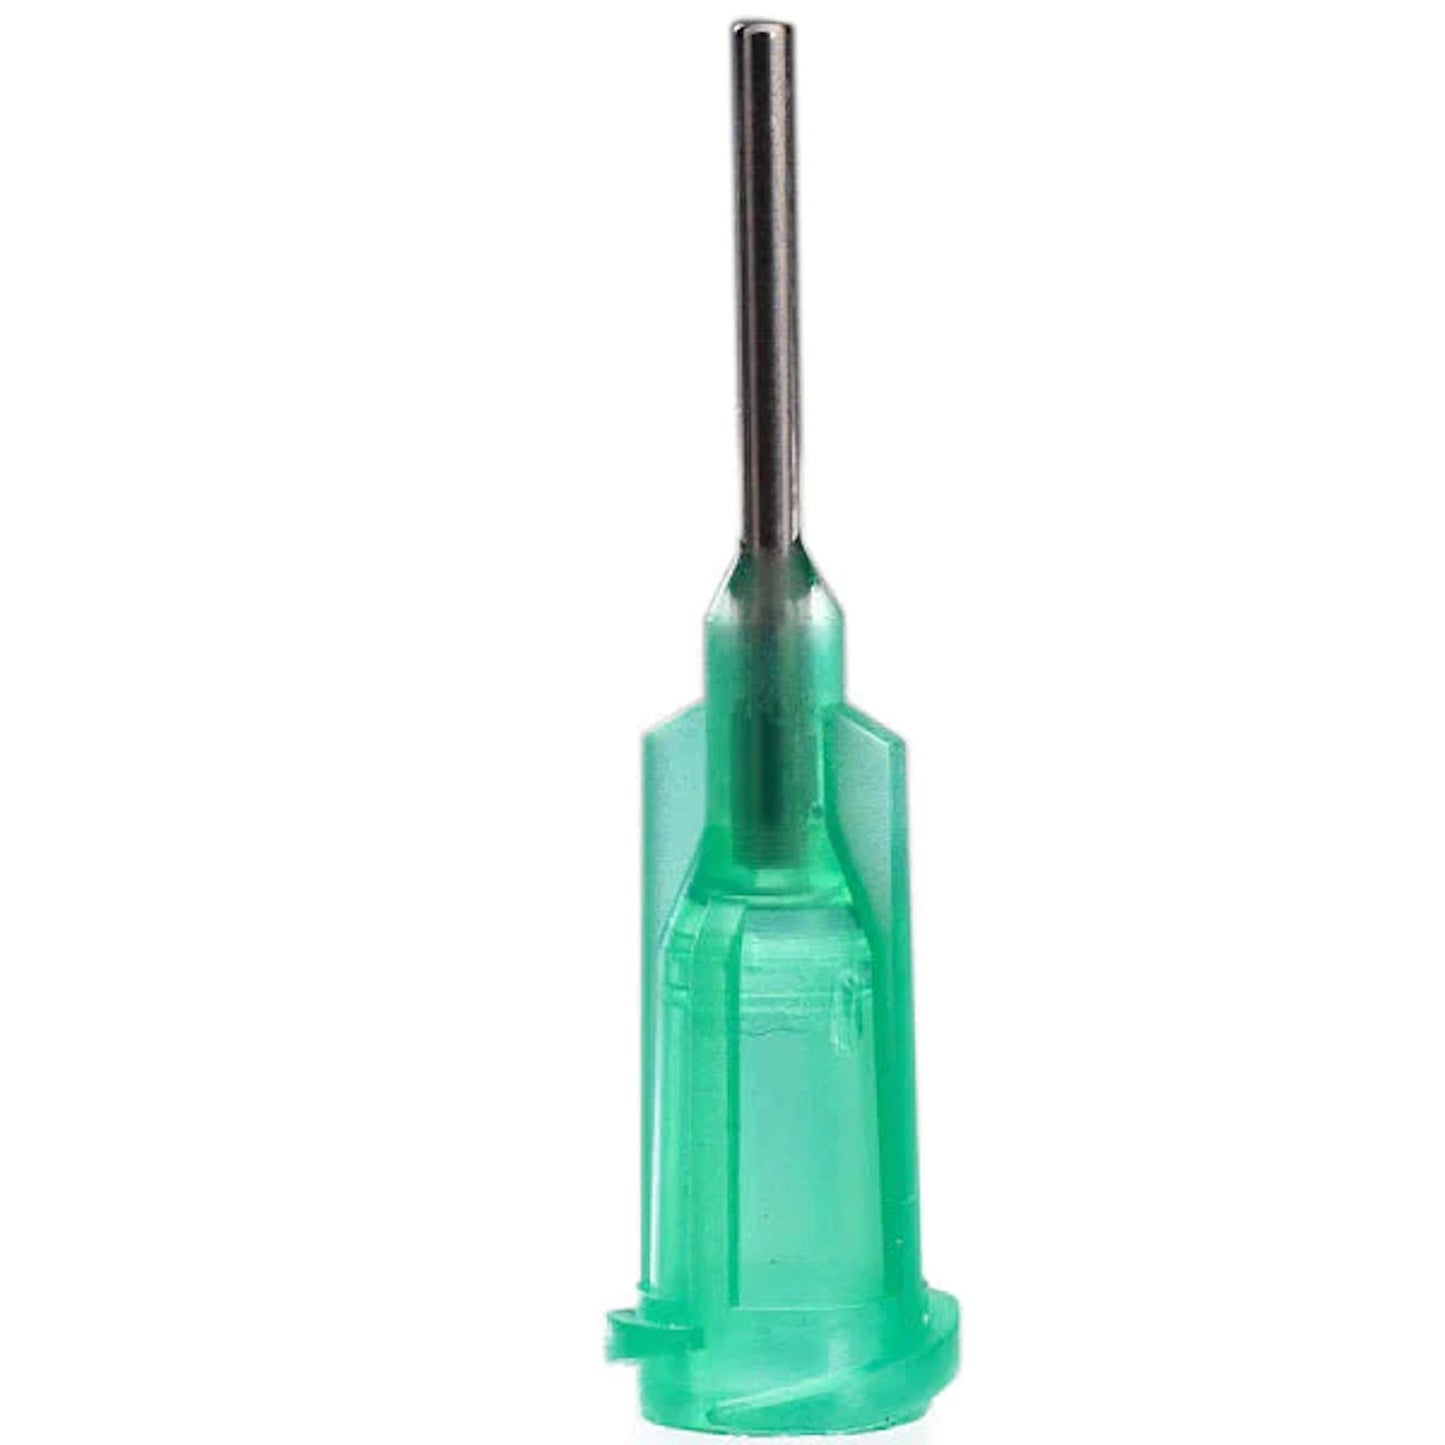 Metal blunt dispensing tips for luer lock syringes 1/4"